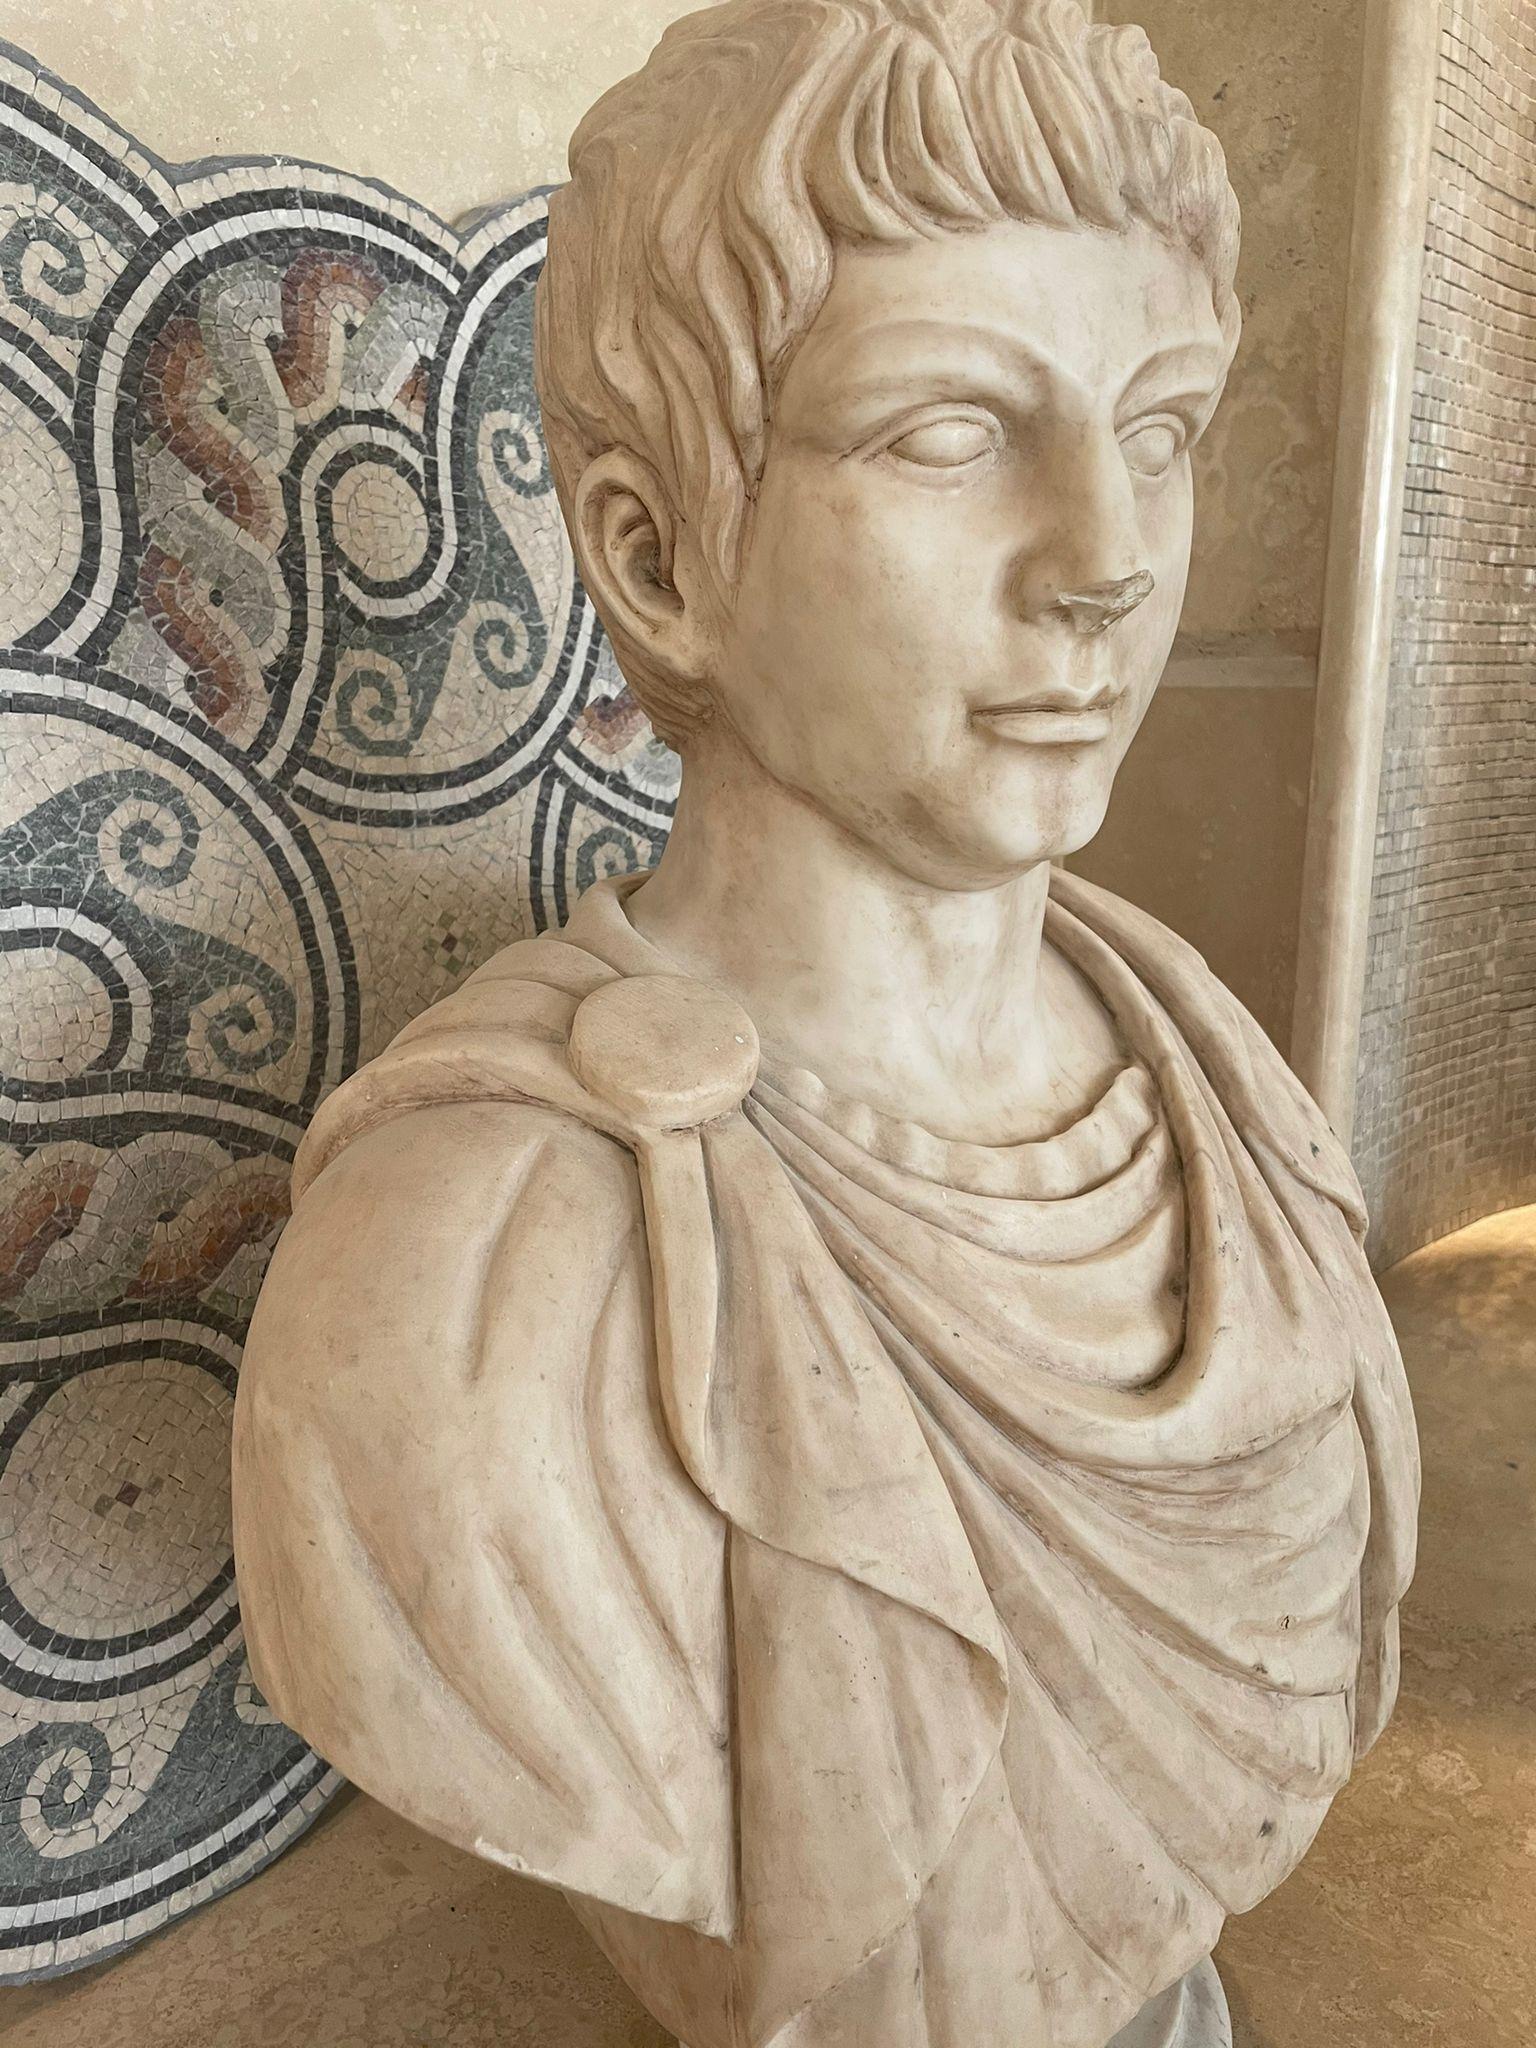 who was emperor after julius caesar